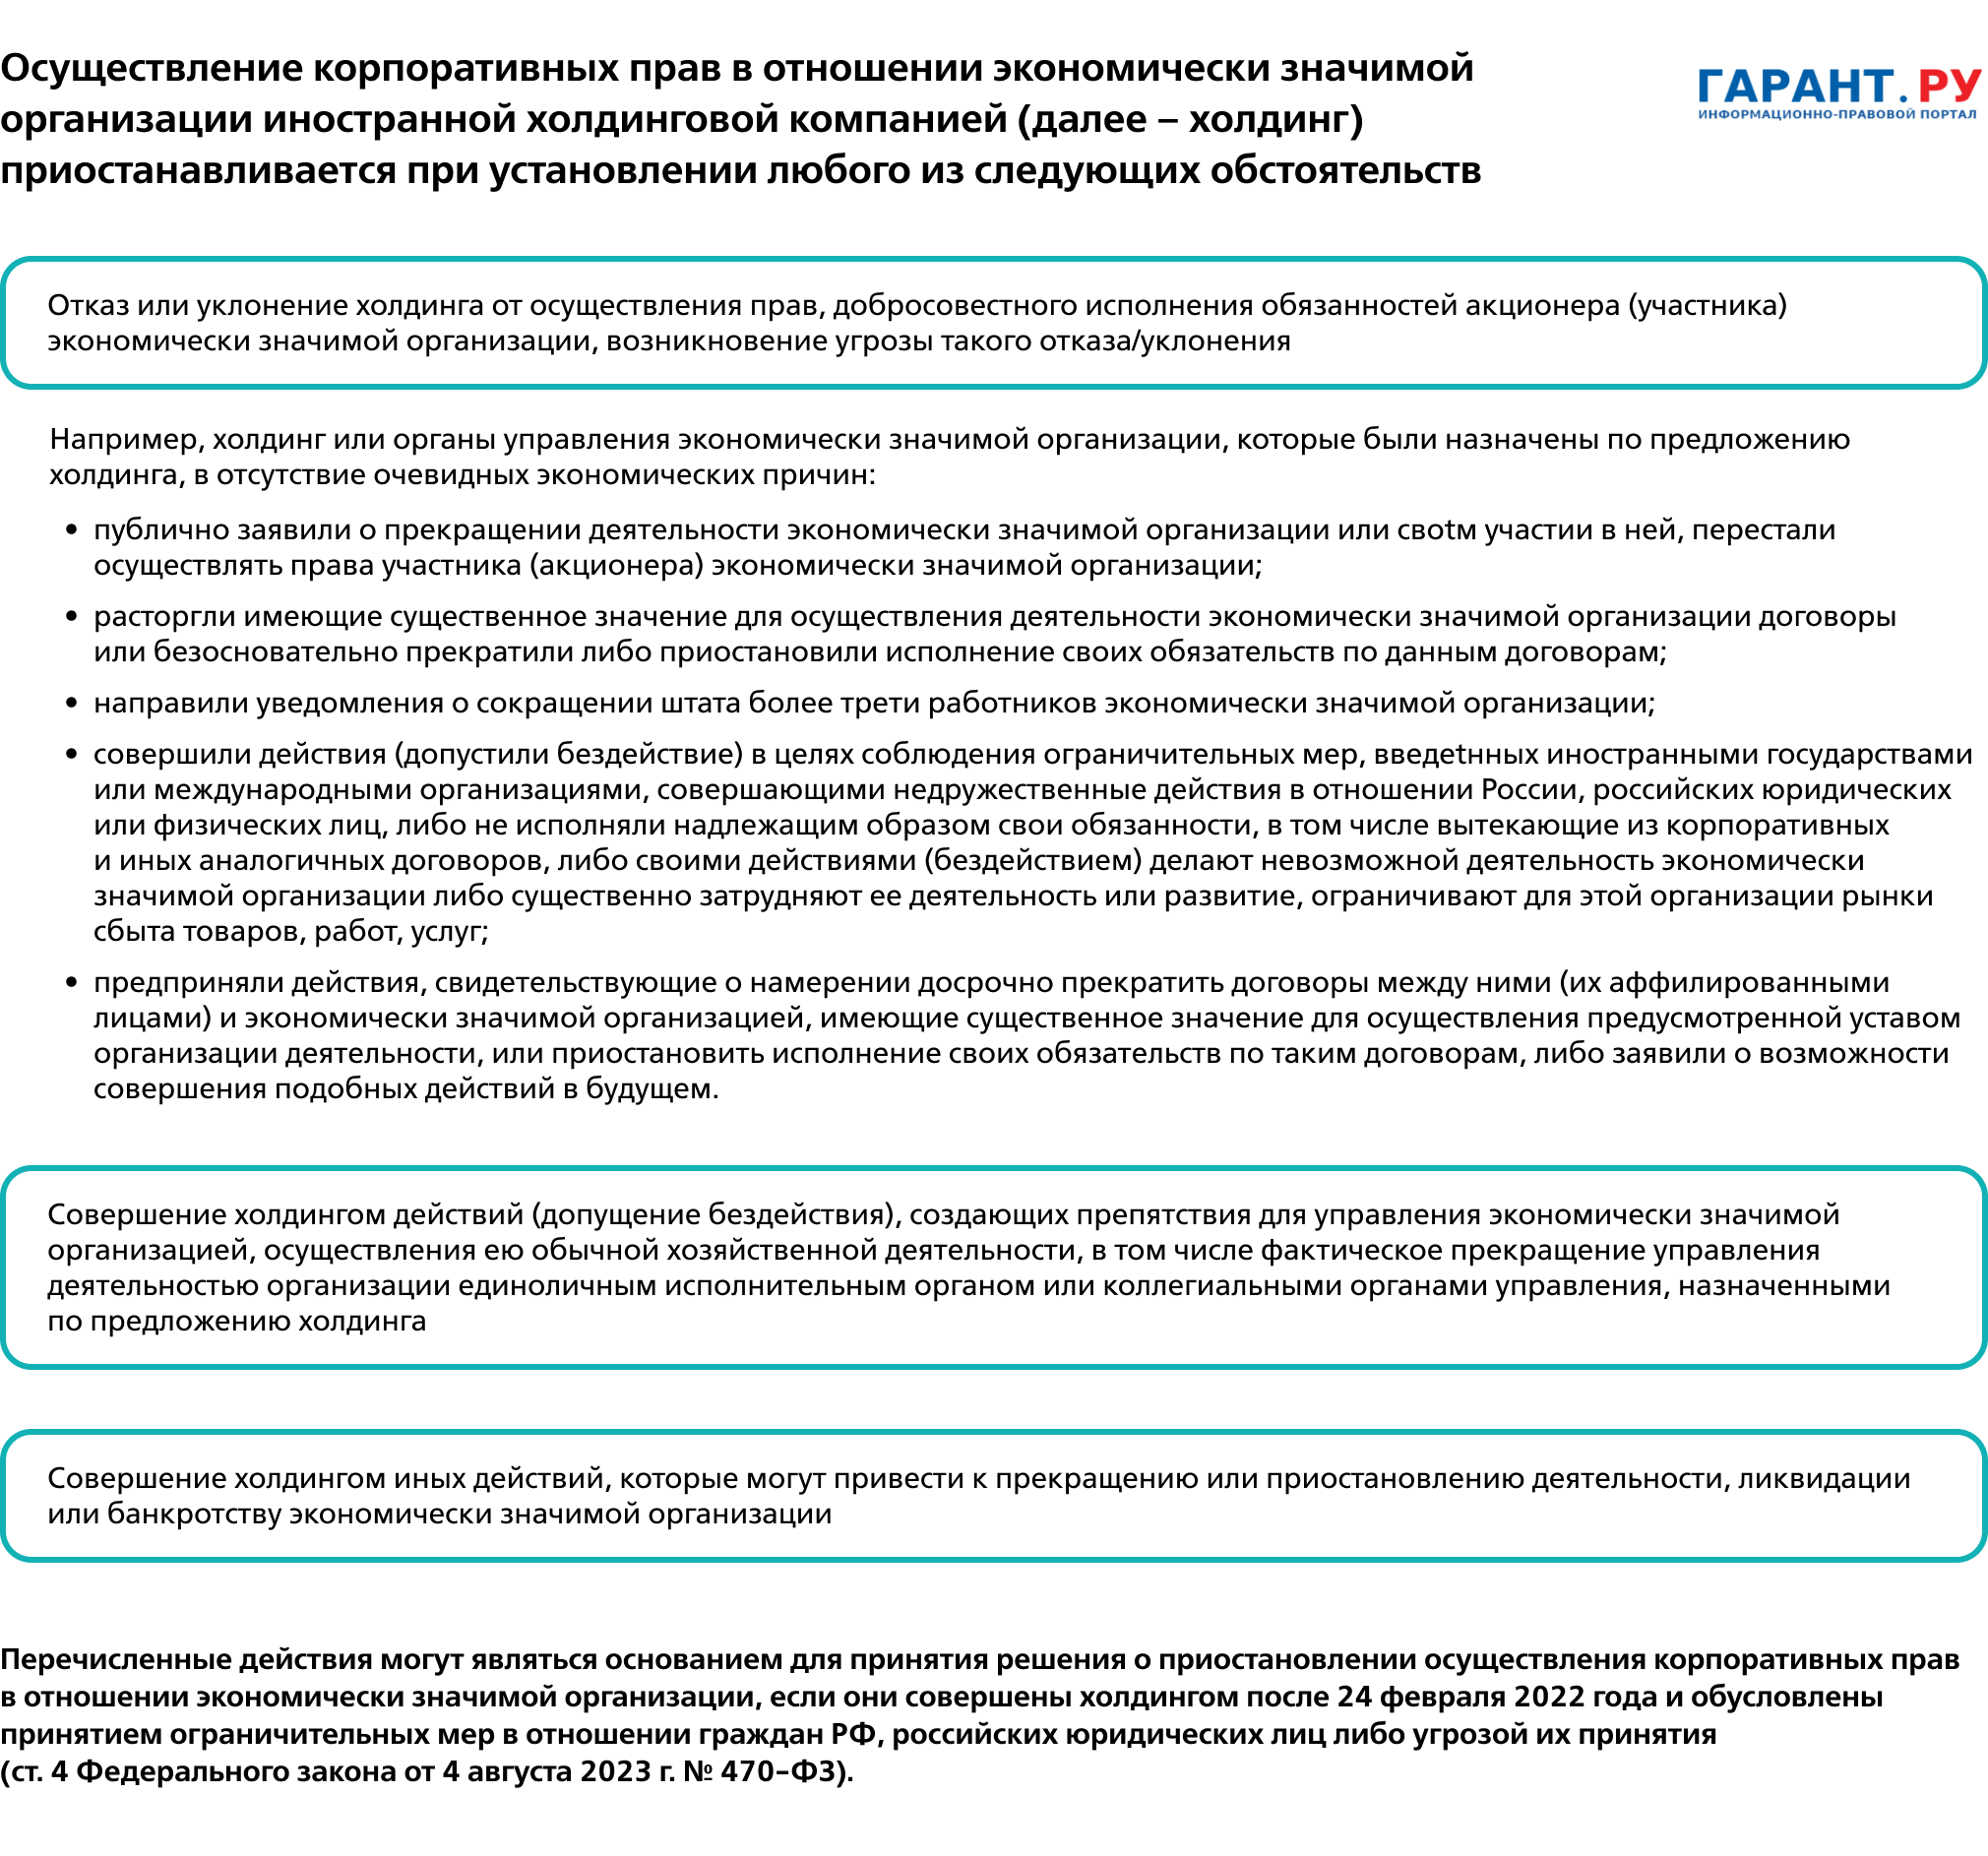 Приостановление корпоративных прав иностранных холдинговых компаний в отношении российских экономически значимых организаций